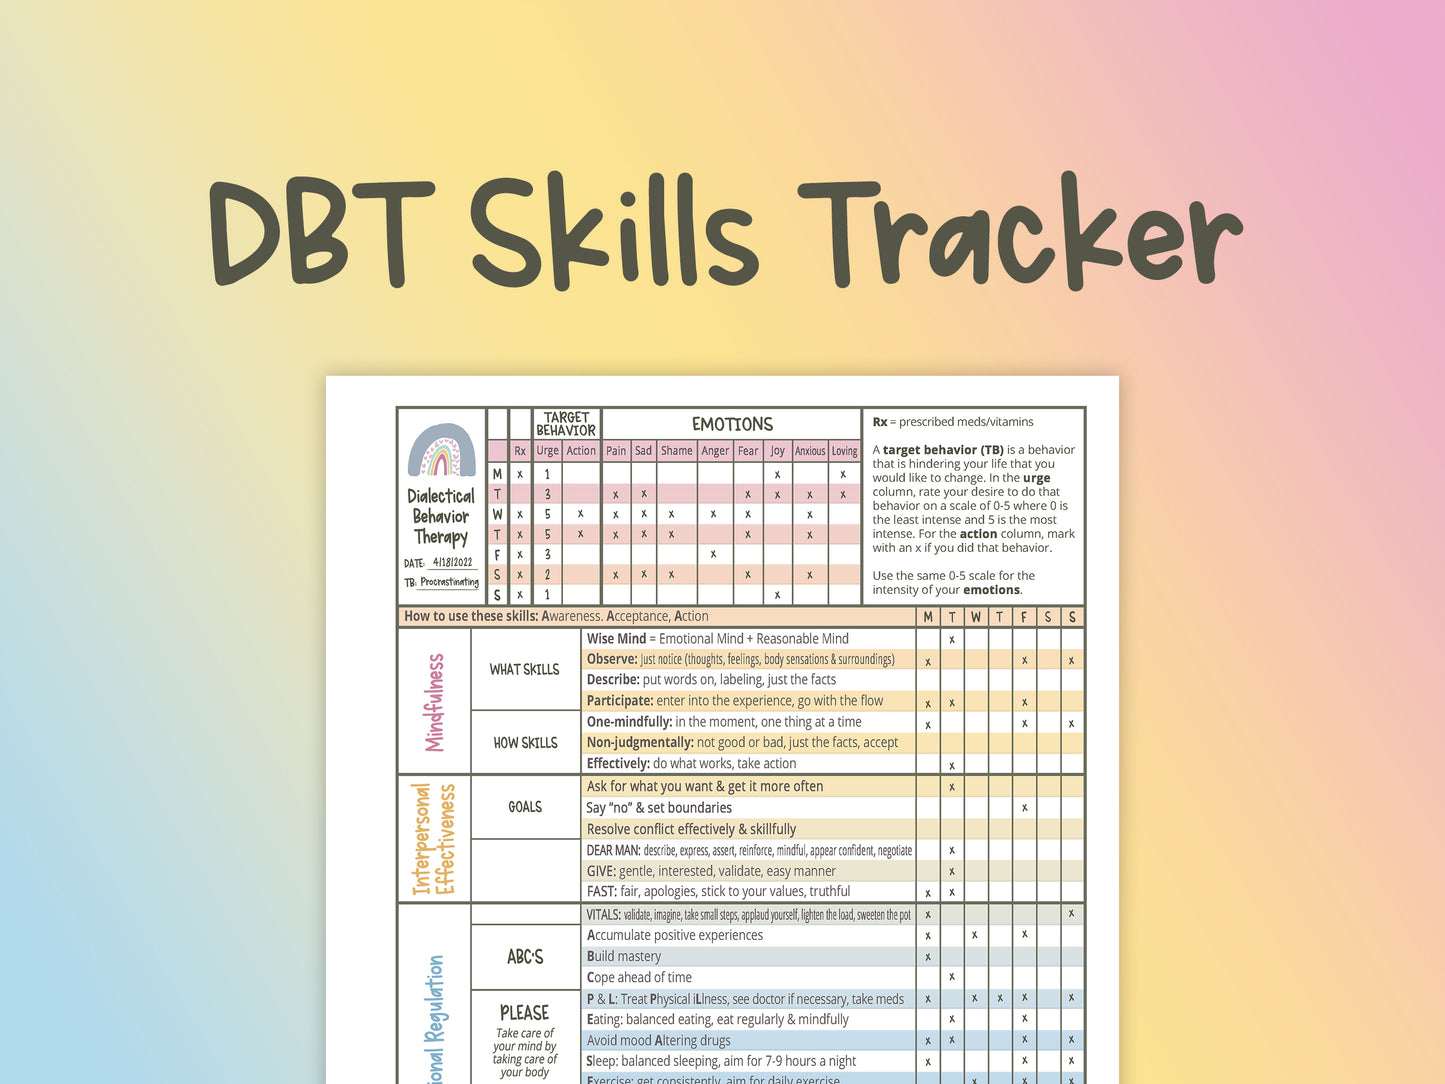 DBT Skills Tracker